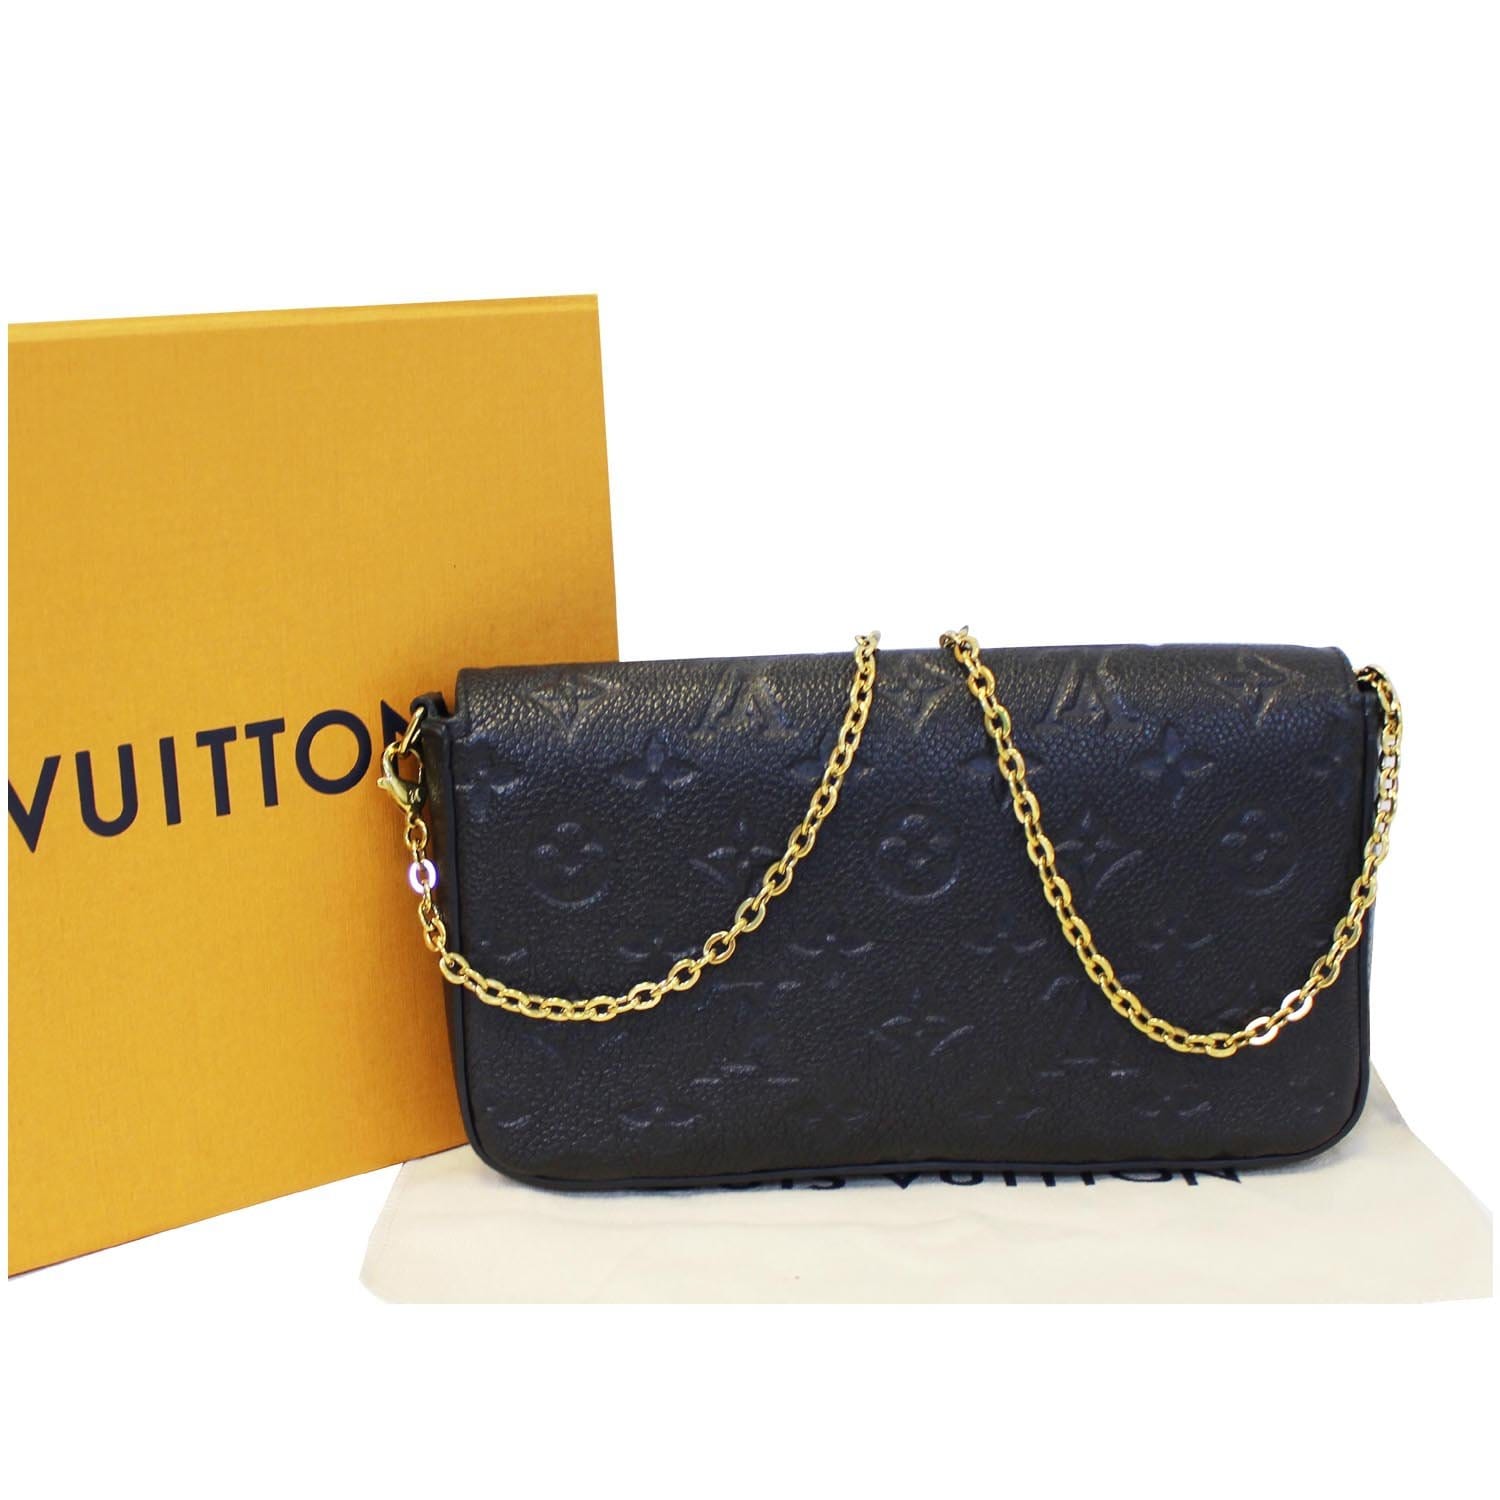 💕Brand new Louis Vuitton Felicie pochette Monogram Empreinte noir✨️ 